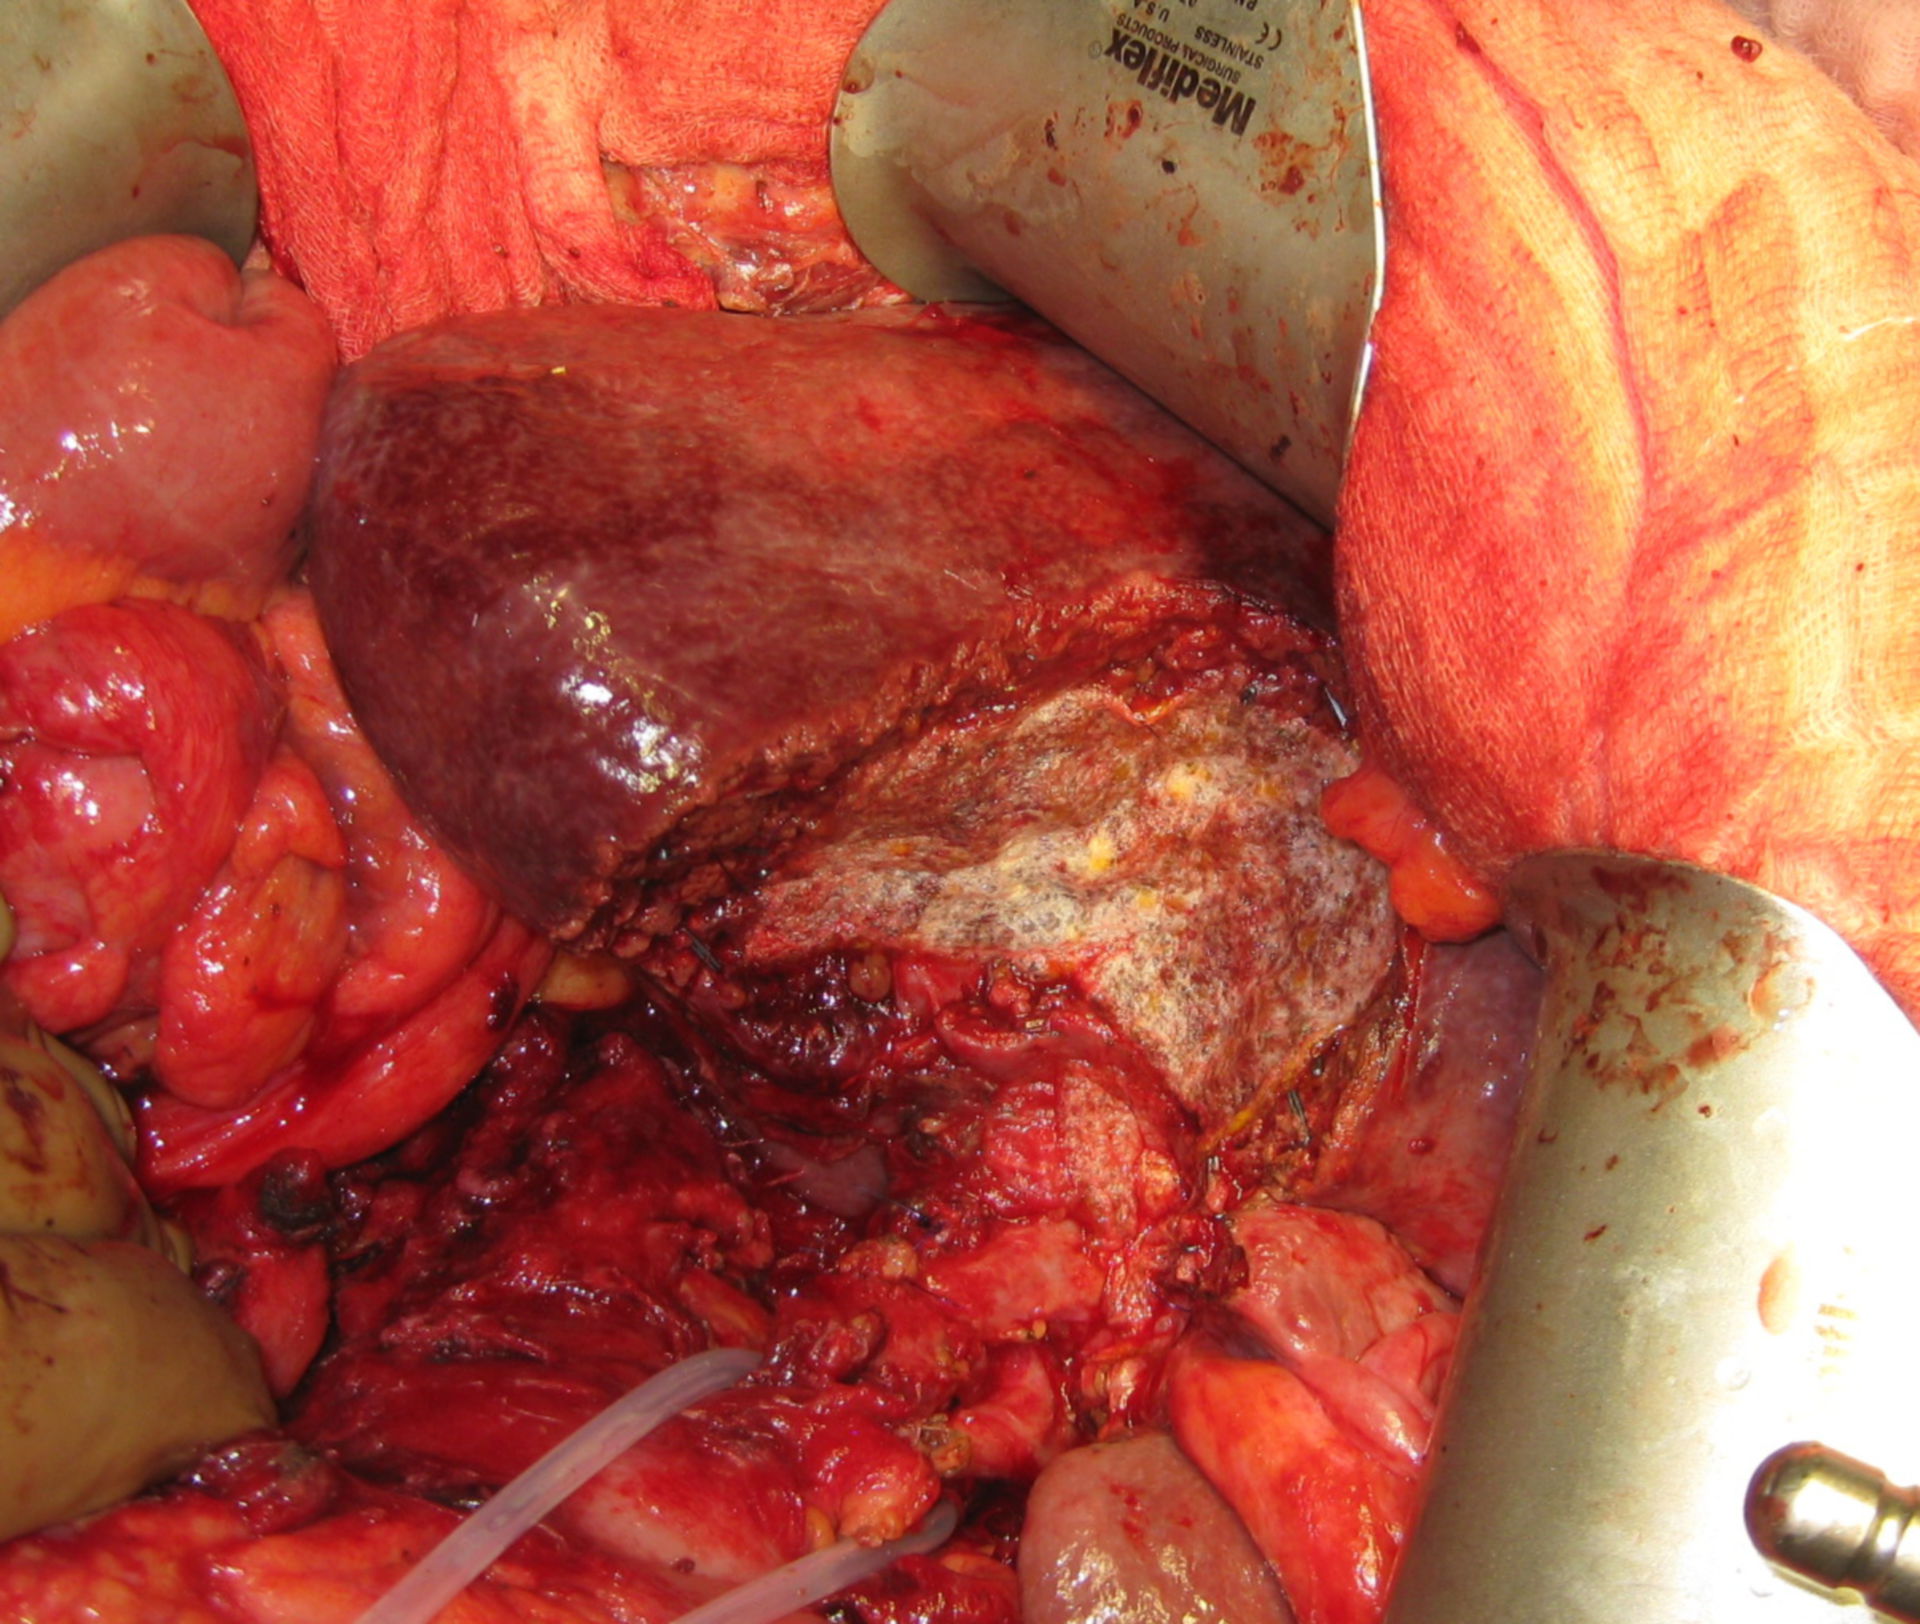 Resección parcial del hígado a causa de un carcinoma de la vesícula biliar